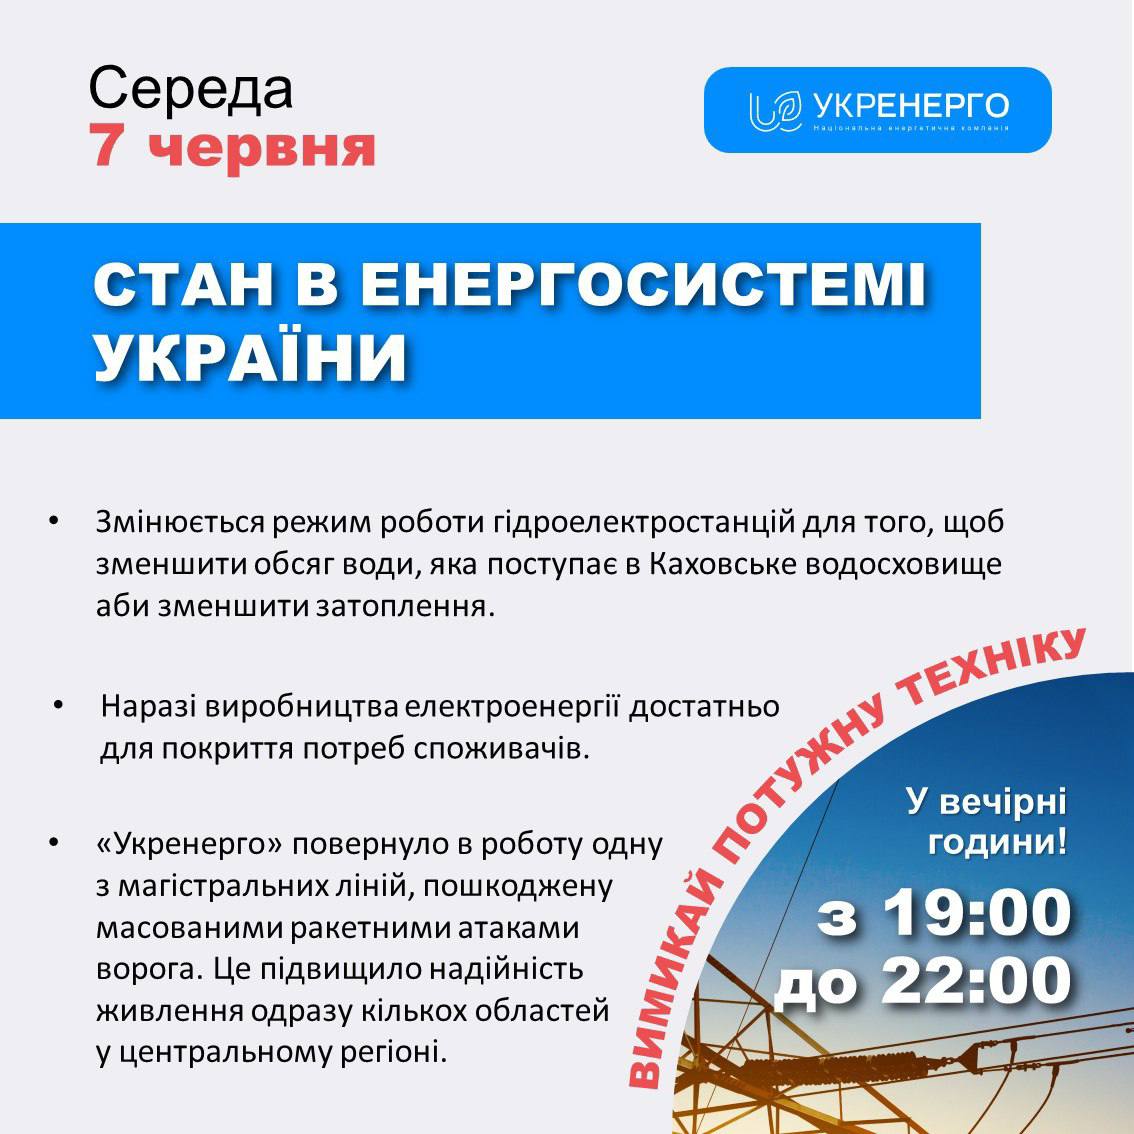 В Укрэнерго сделали заявление после подрыва Каховской ГЭС: нужно ограничить использование электроэнергии